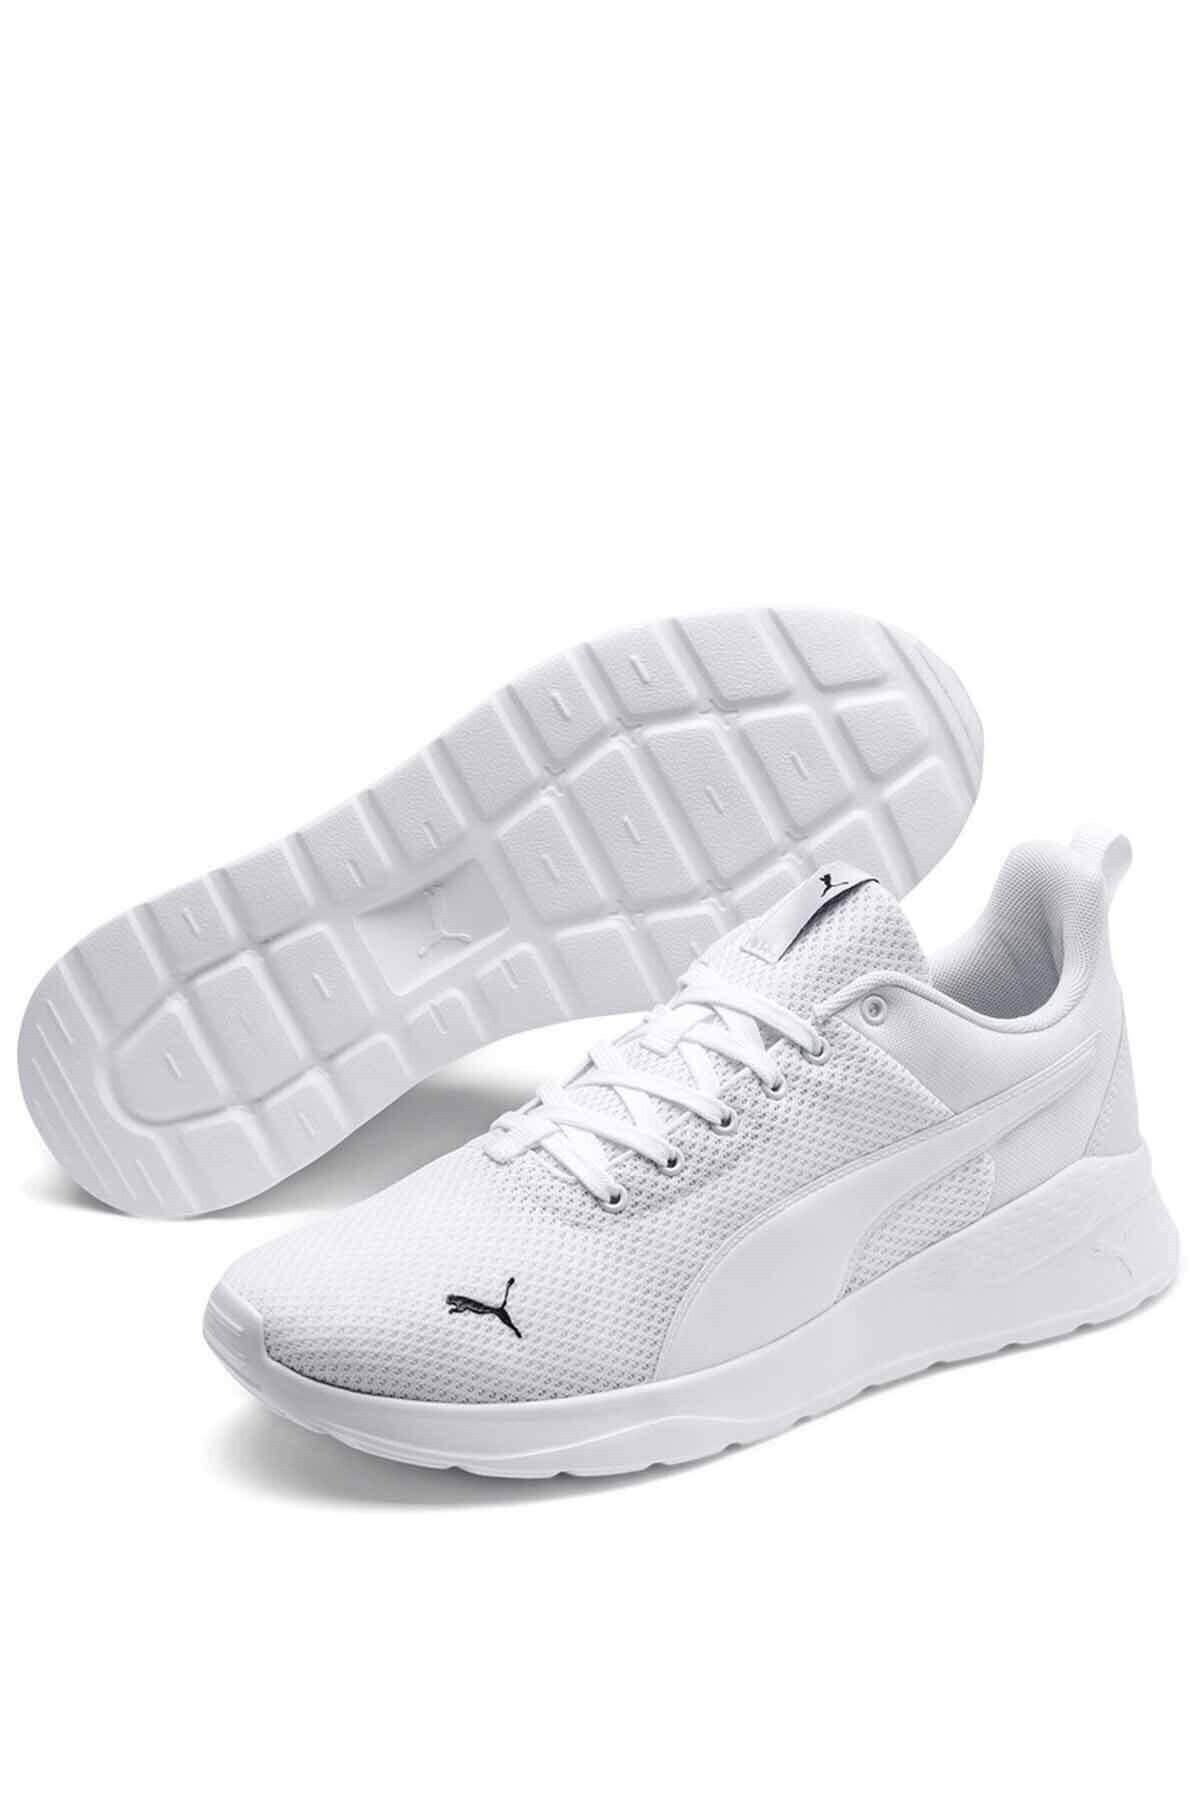 Puma Anzarun Lite Unisex Günlük Spor Ayakkabı 37112803 Beyaz